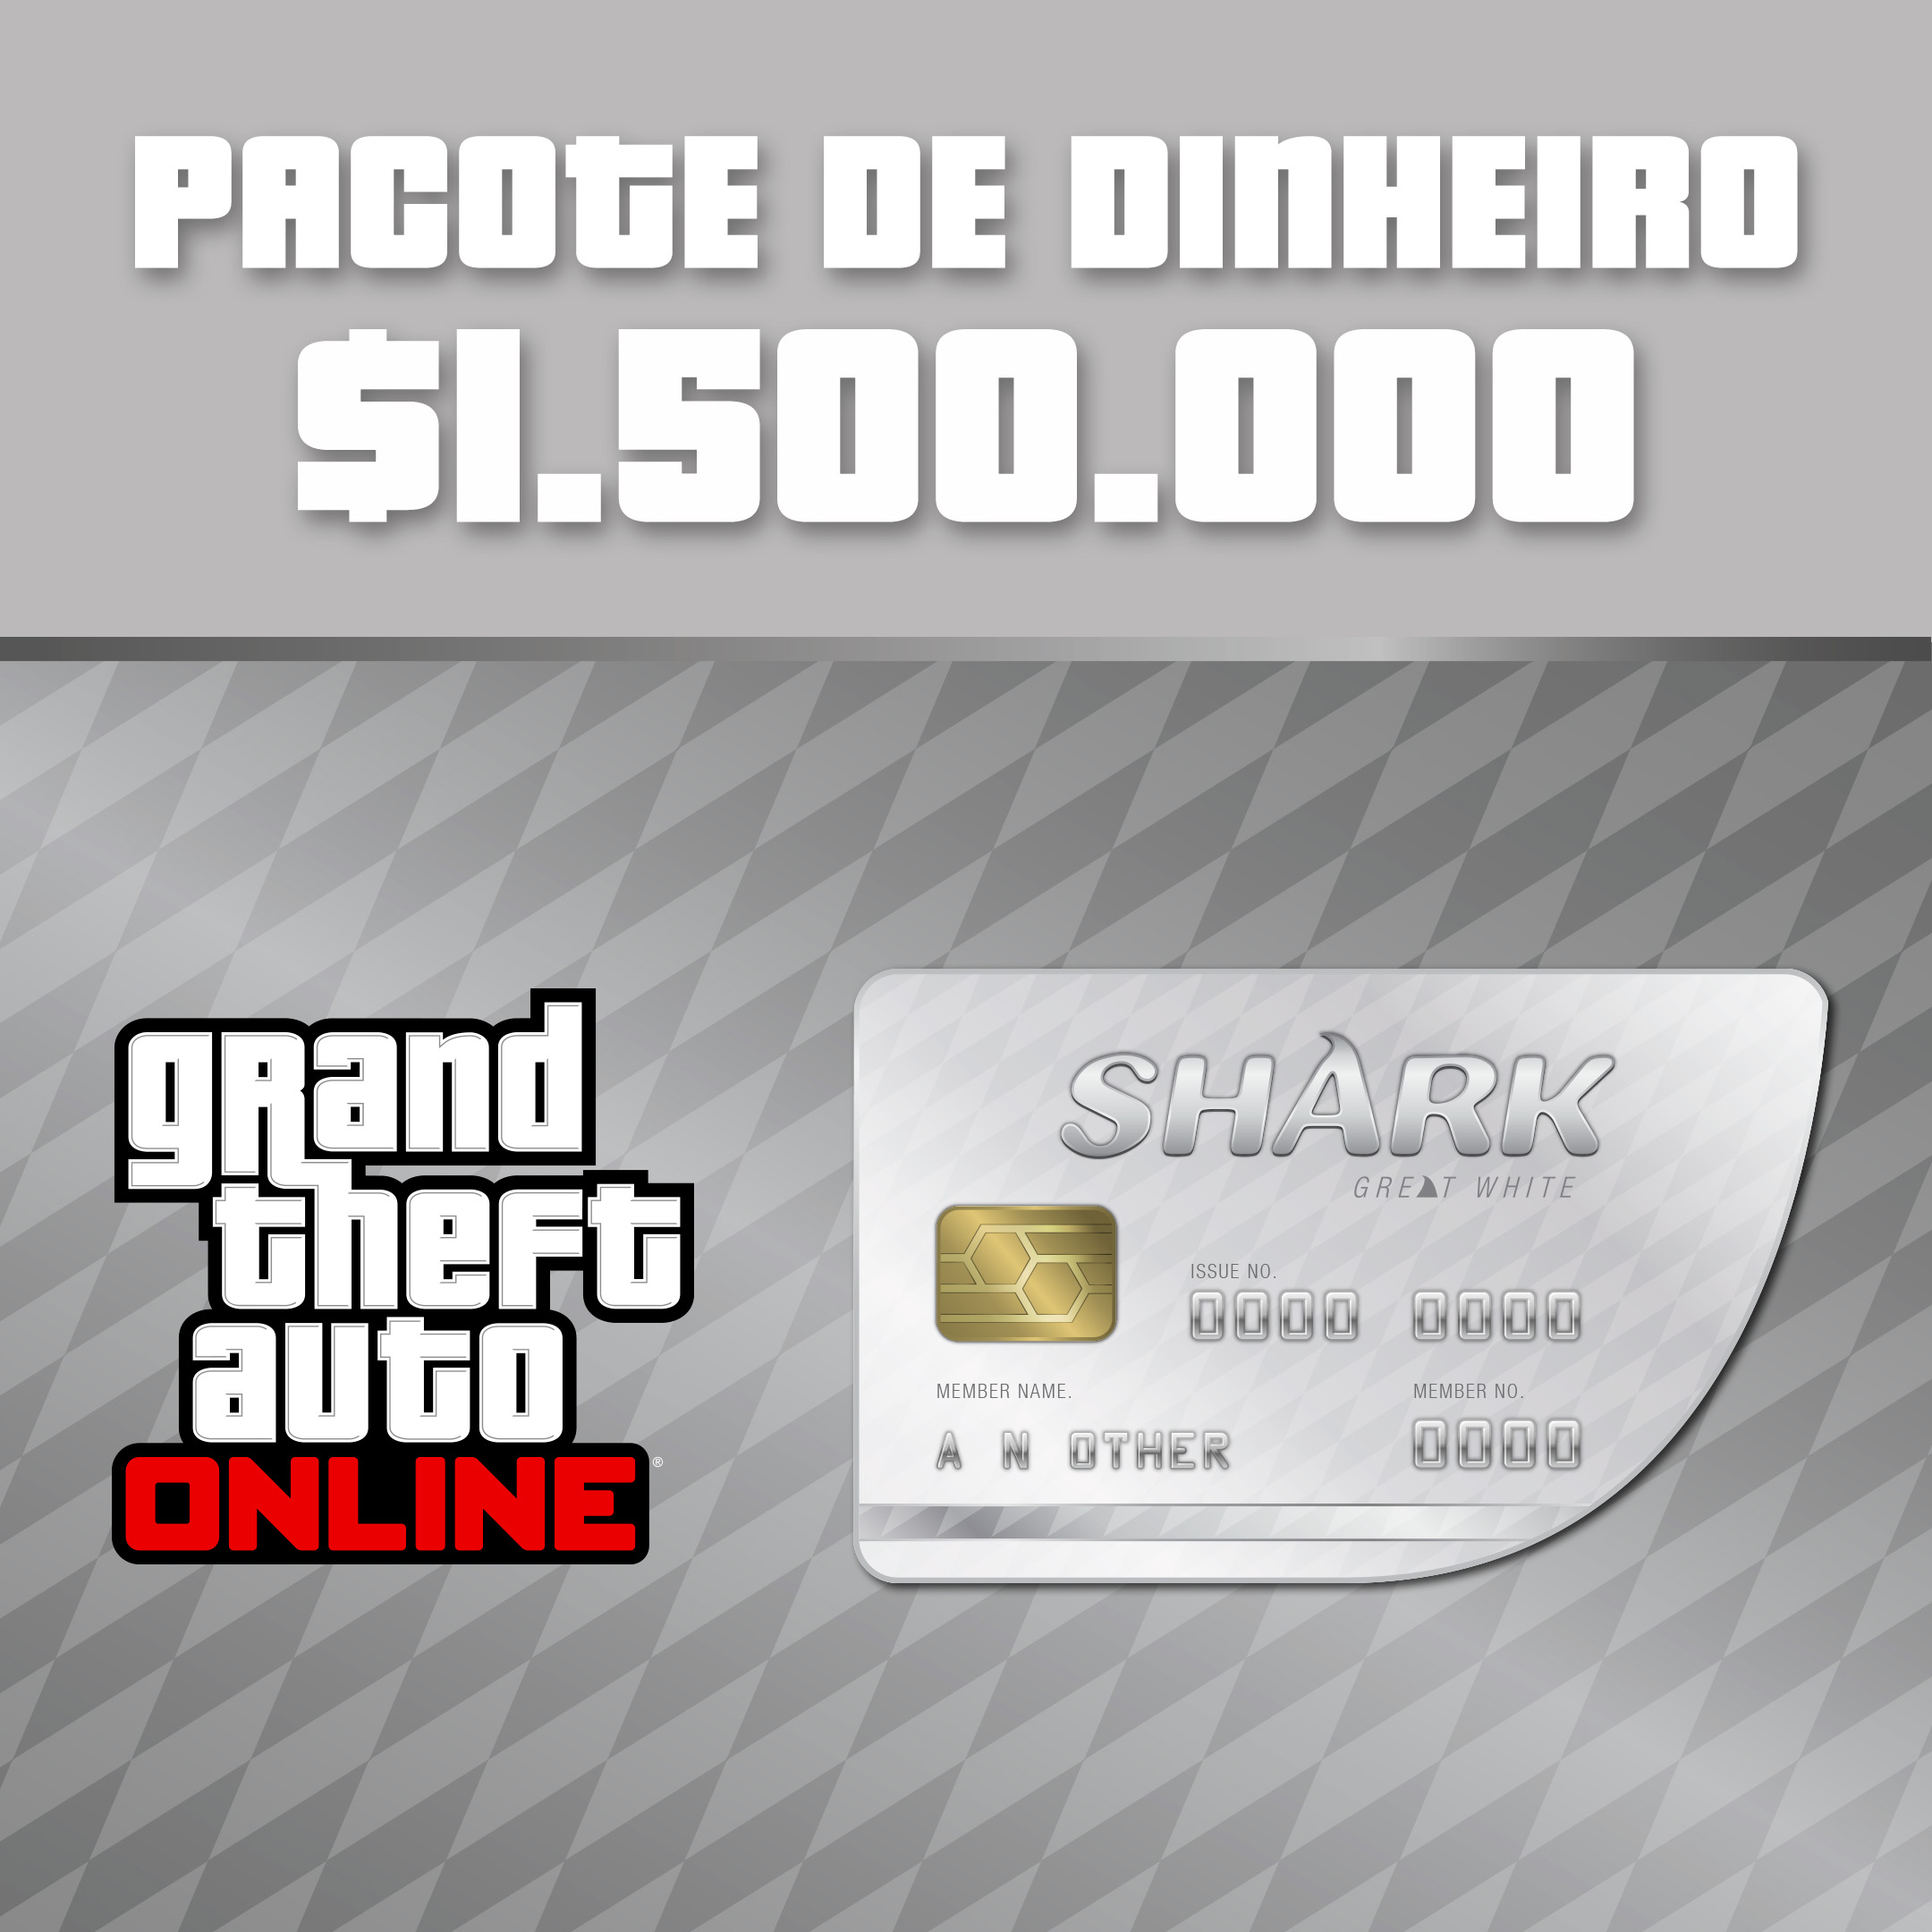 CÓDIGO DE DINHEIRO NO GTA 5 - COMO FICAR BILIONÁRIO NO GTA 5 OFFLINE !